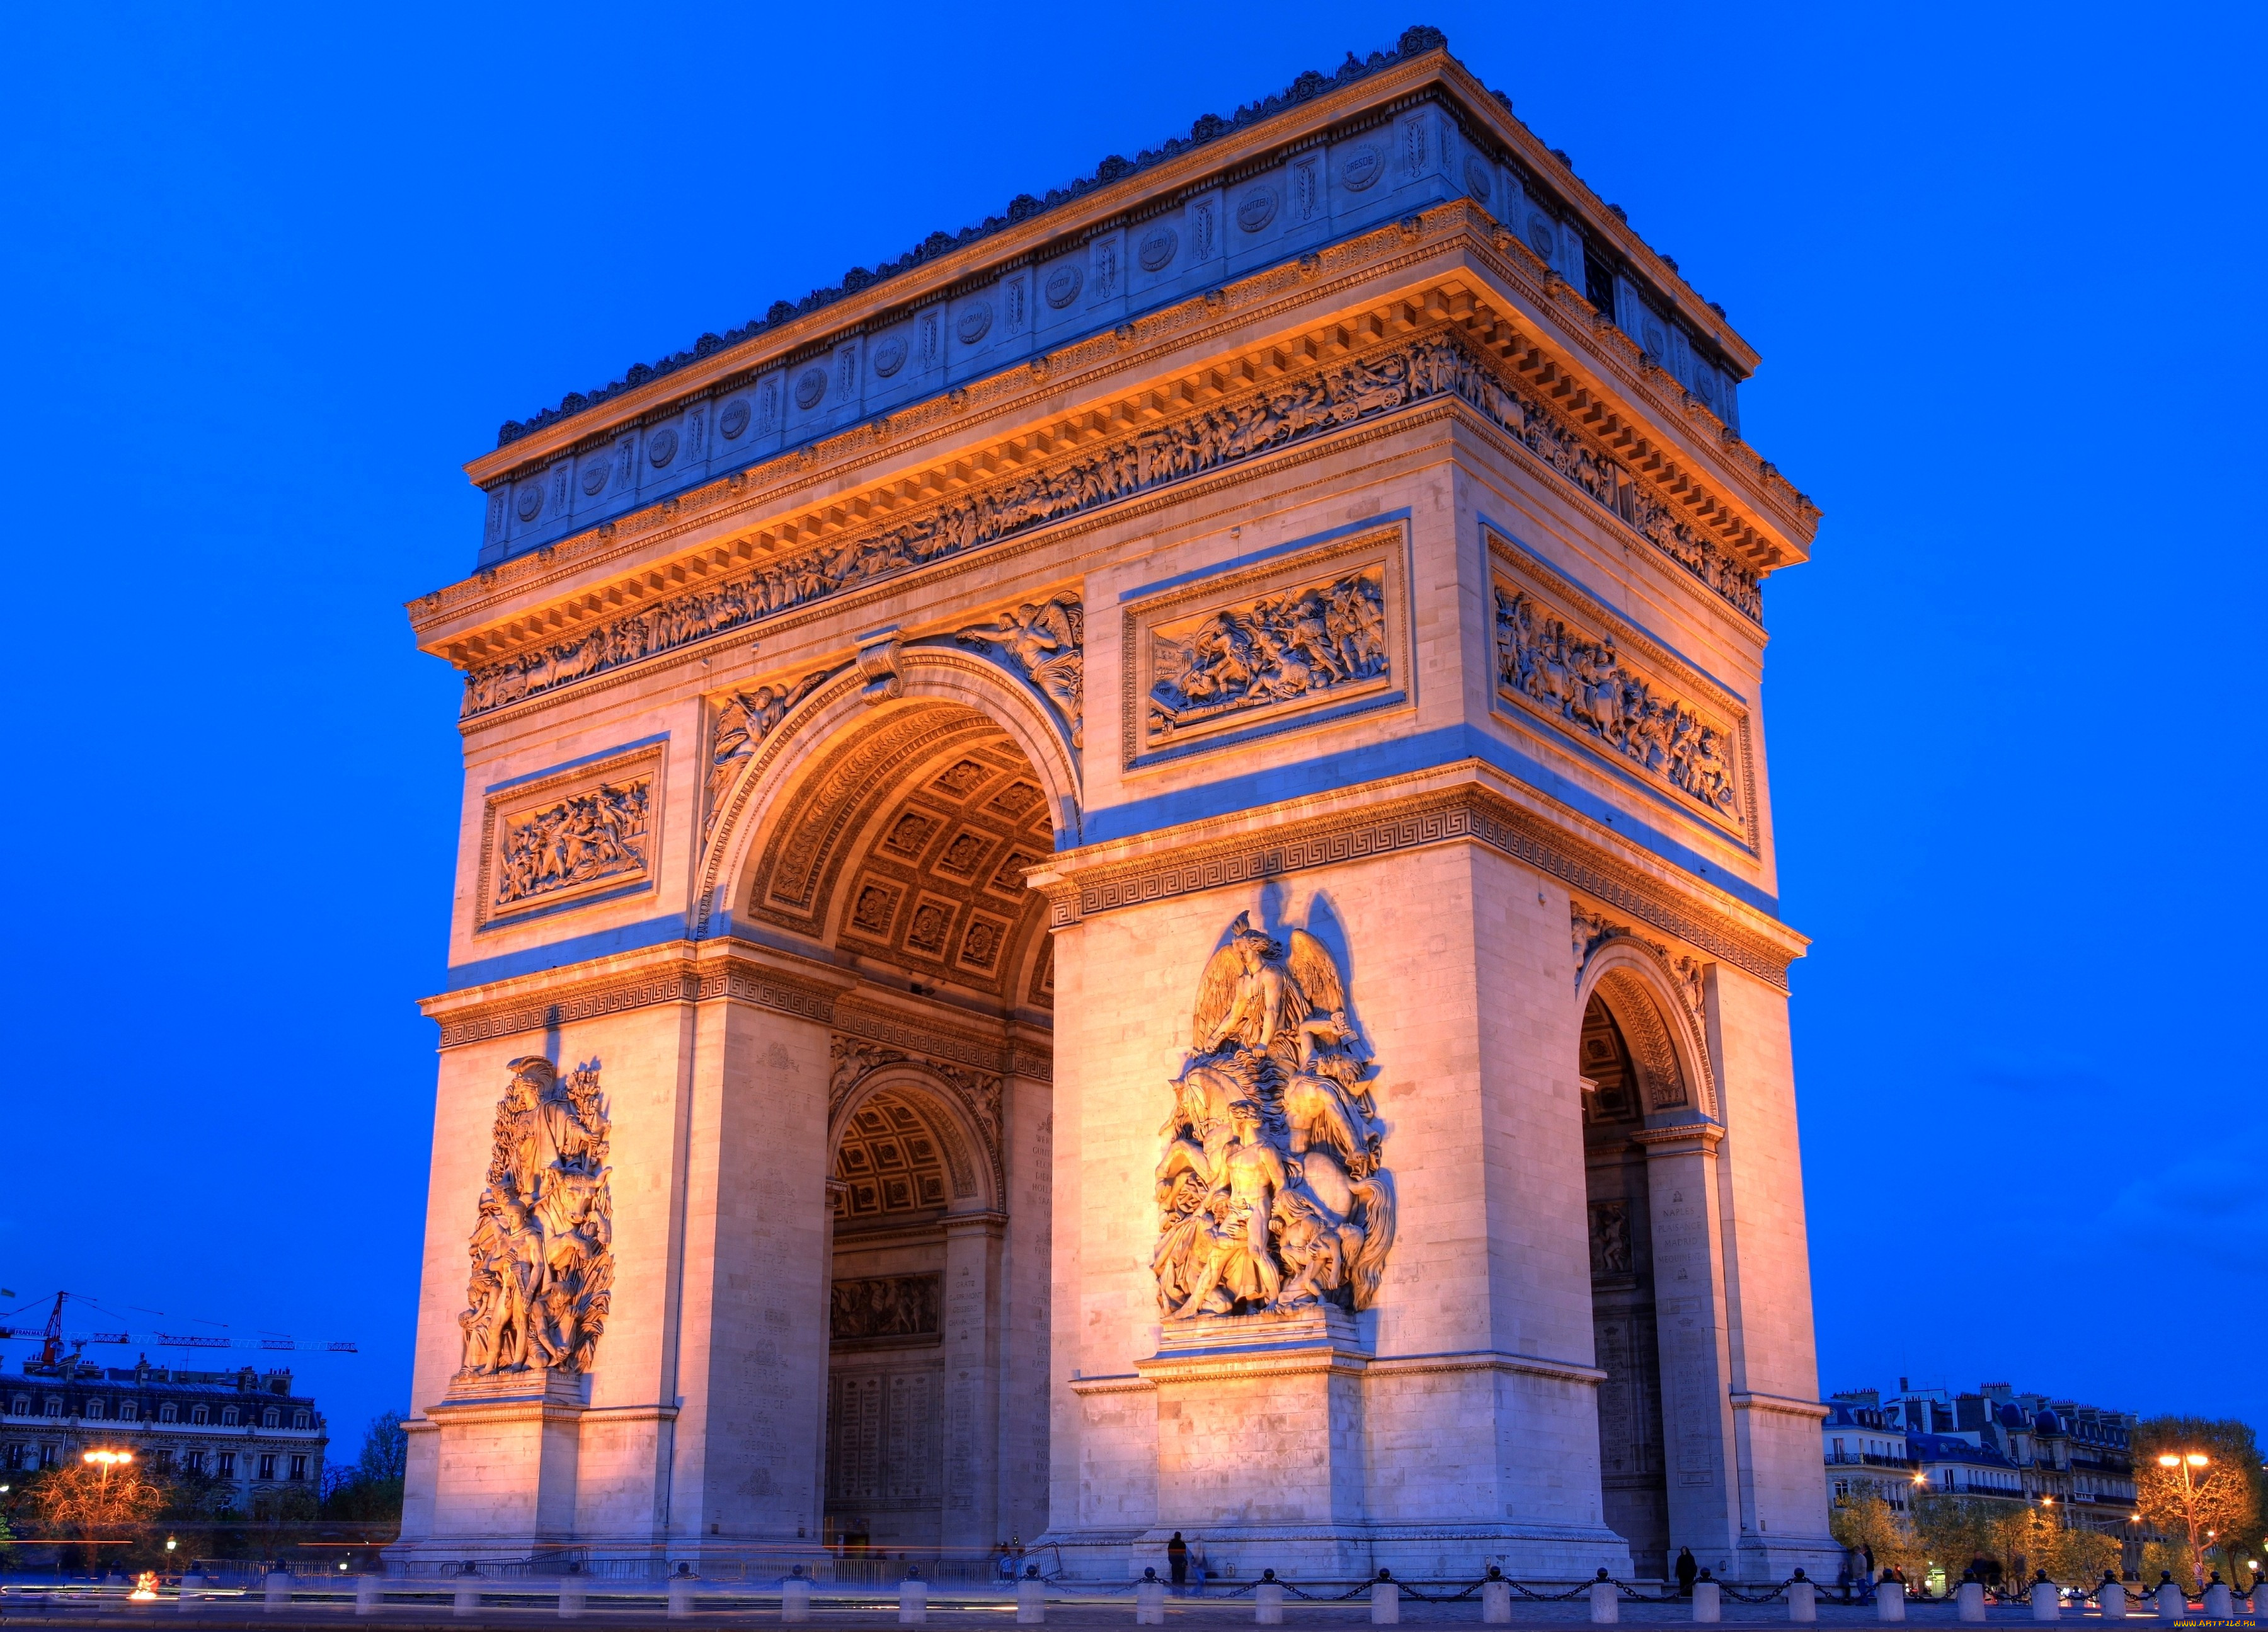 Когда была построена триумфальная арка. Триумфаотная аркамв Париже. Франция Париж Триумфальная арка. Триумфальная арка Париж архитектура. Утеумфальная река во Франции.